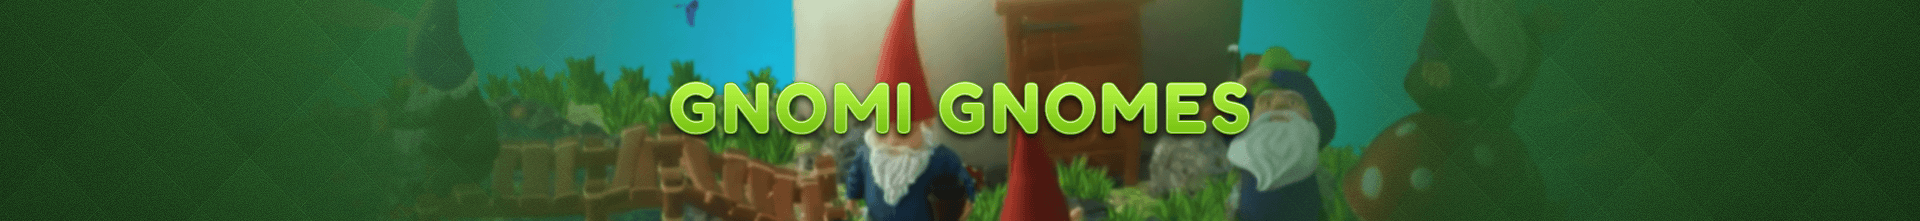 Gnomi Gnomes